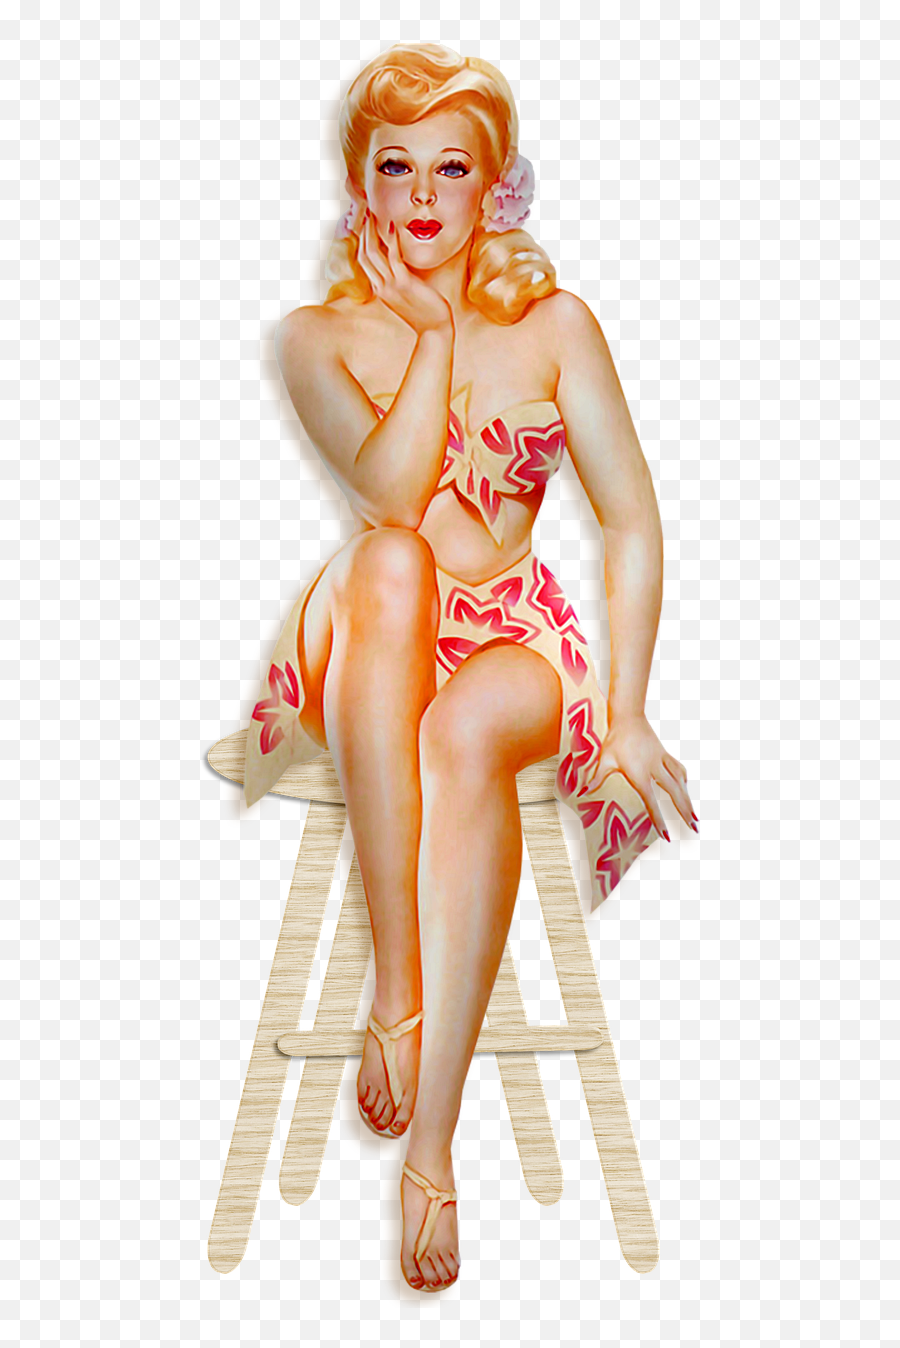 Pin Up Girl Sitting 1950s - Free Image On Pixabay Pin Up Bilder 50er Emoji,Girl Sitting Png